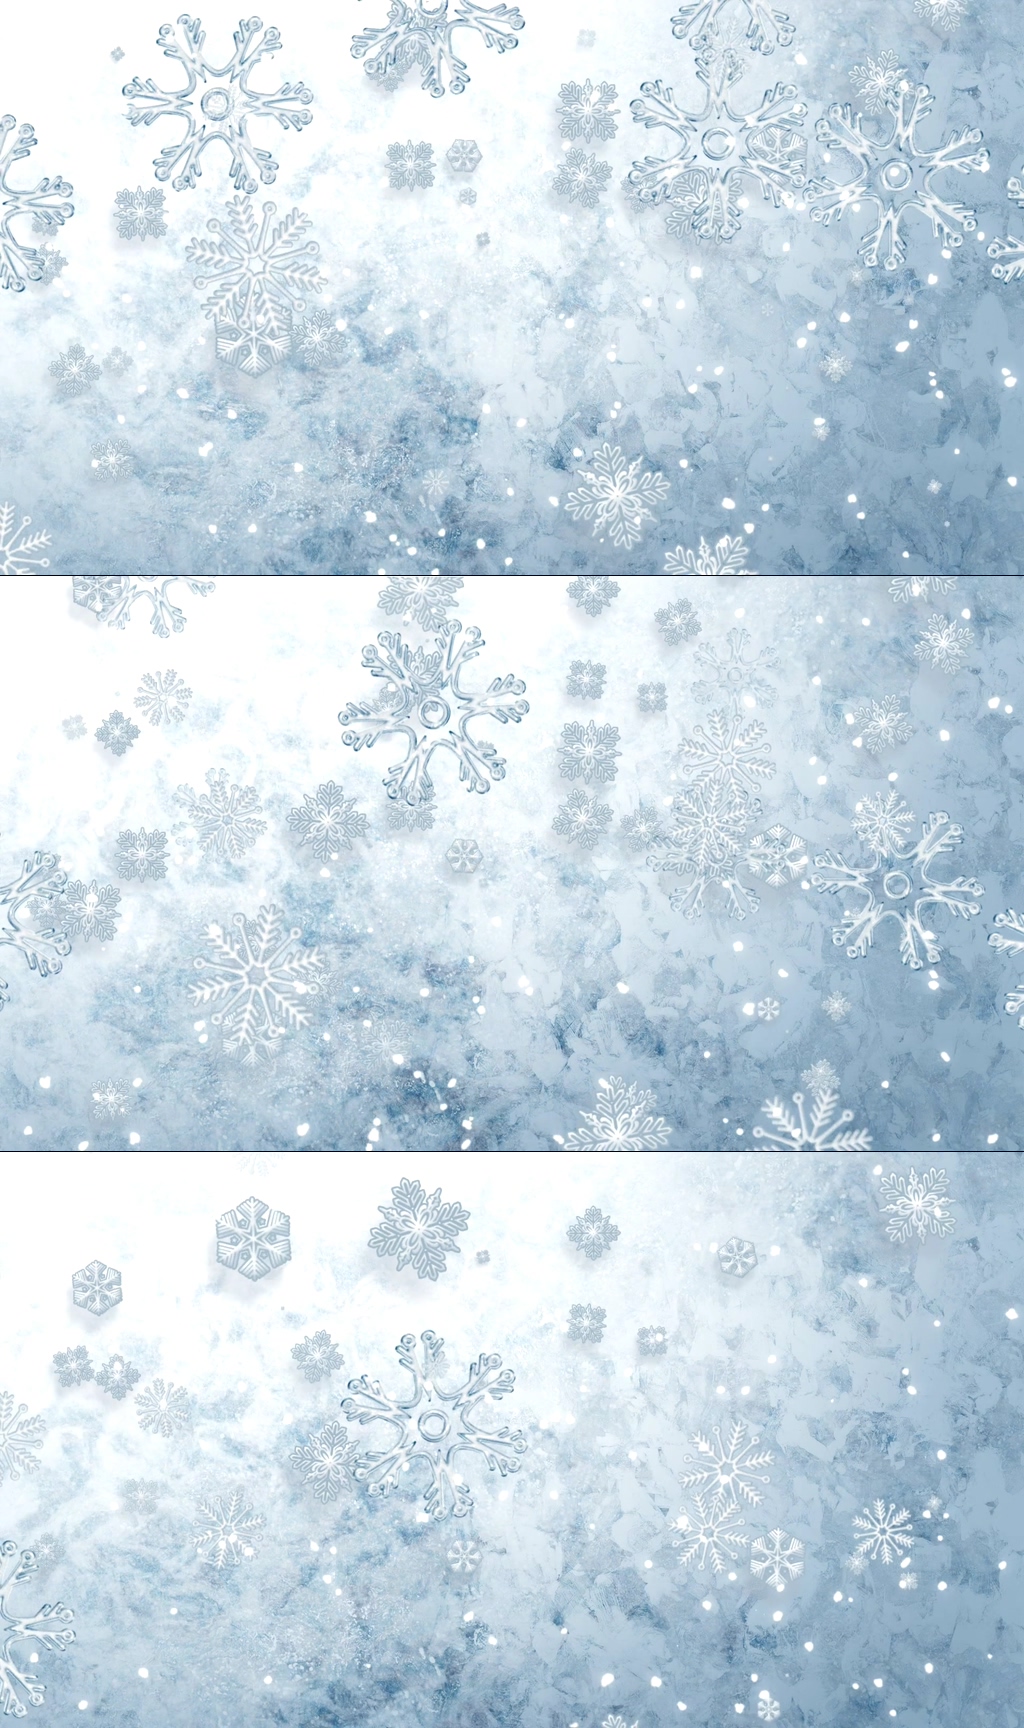 众图网独家提供白色雪花雪景背景视频素材免费下载,本作品是由浪子